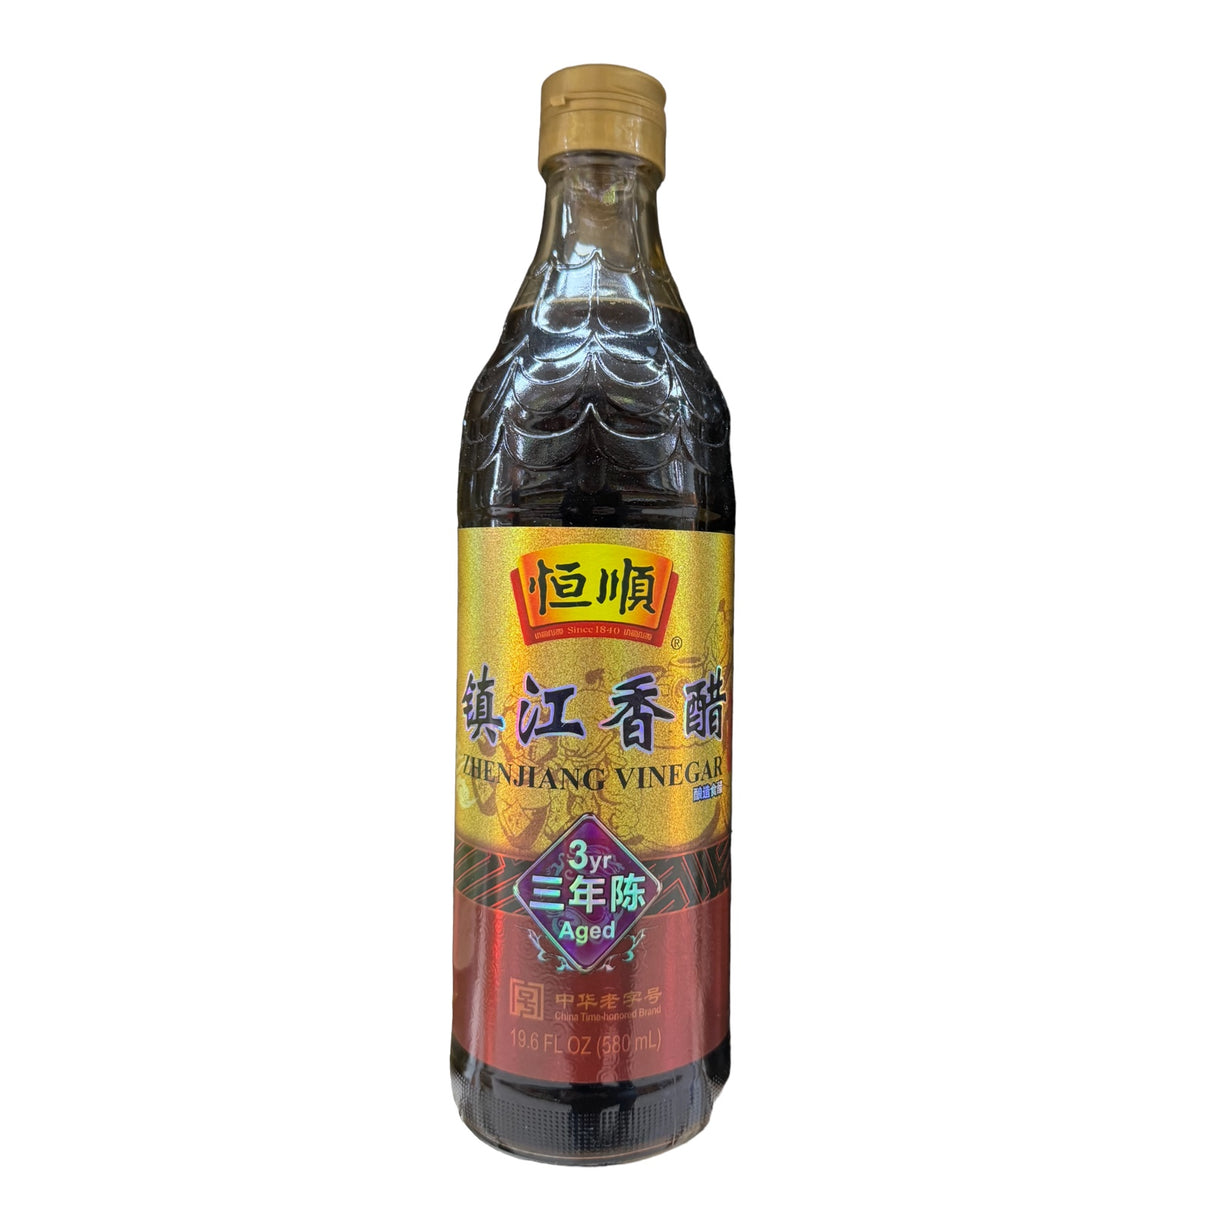 Hengshun Brand (Chinkiang) Zhenjiang Vinegar 3 Year Aged